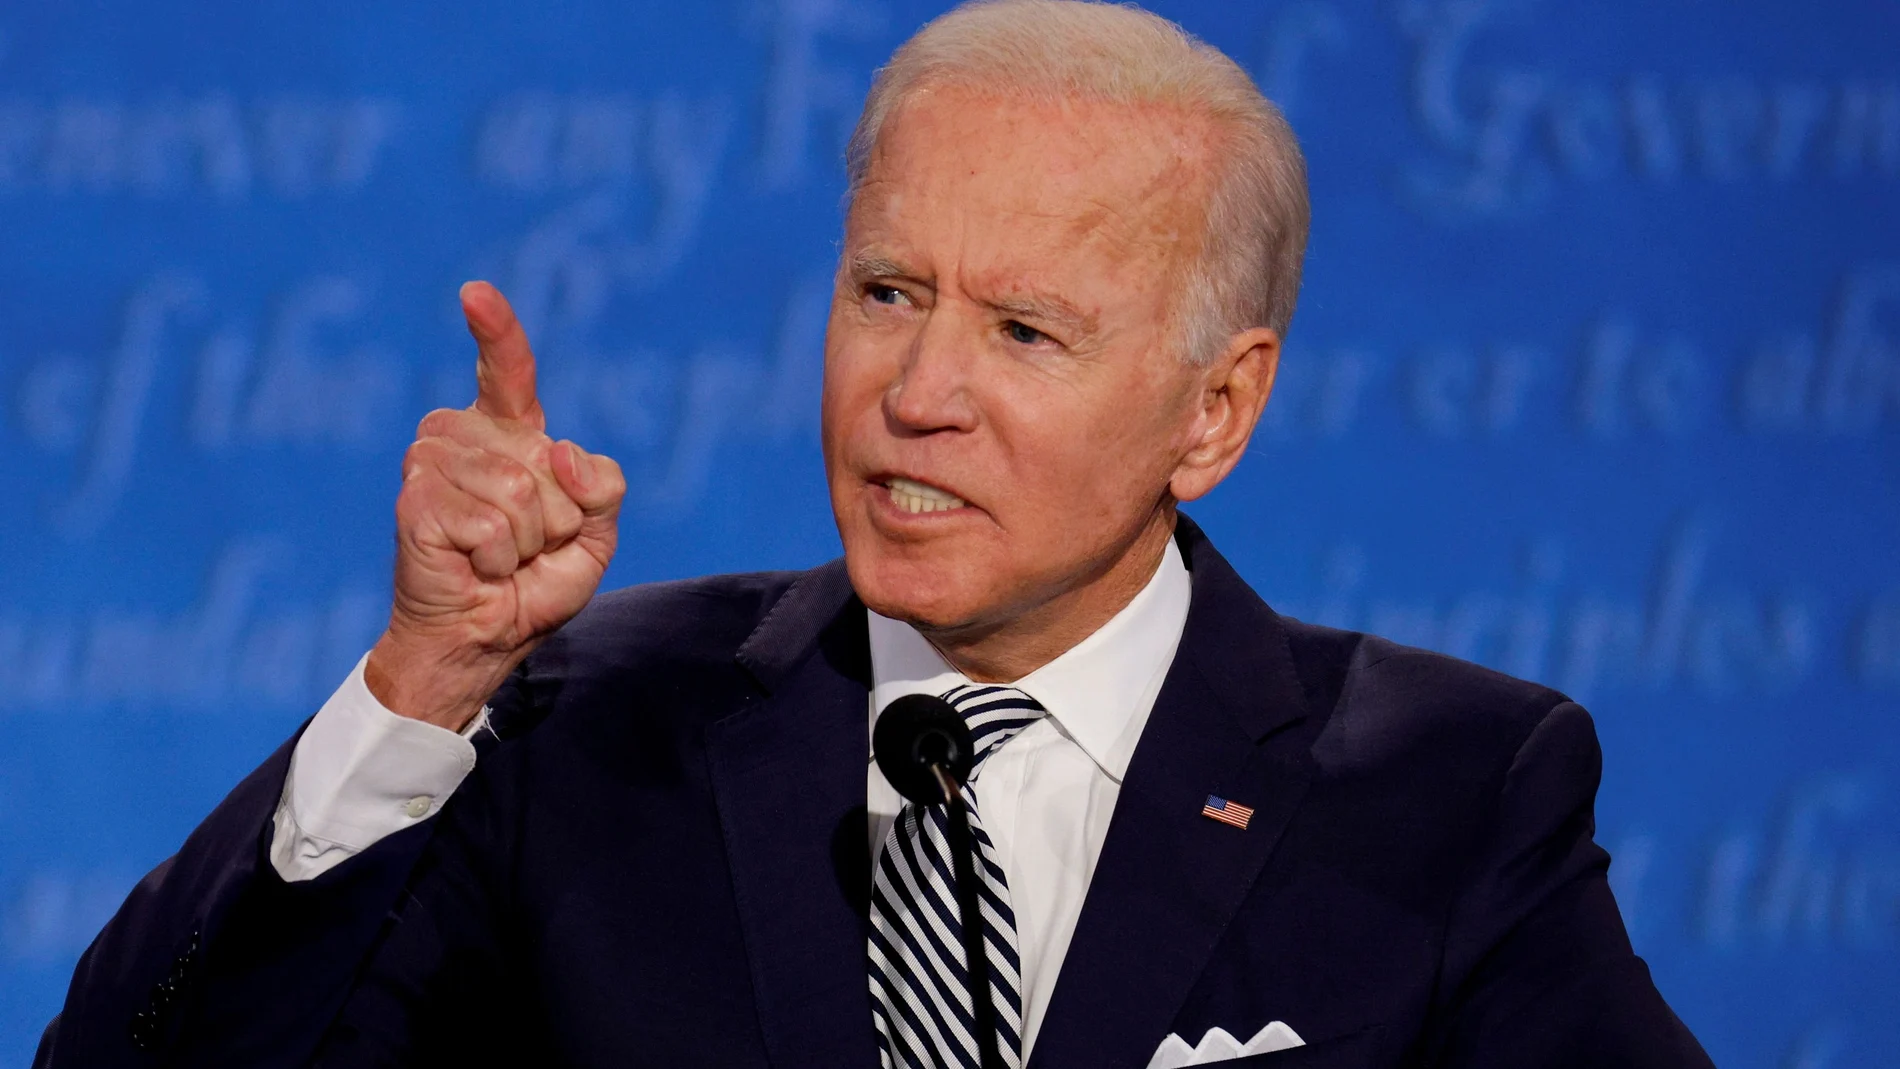 El candidato demócrata, Joe Biden, durante el primer debate presidencial ante el presidente Donald Trump